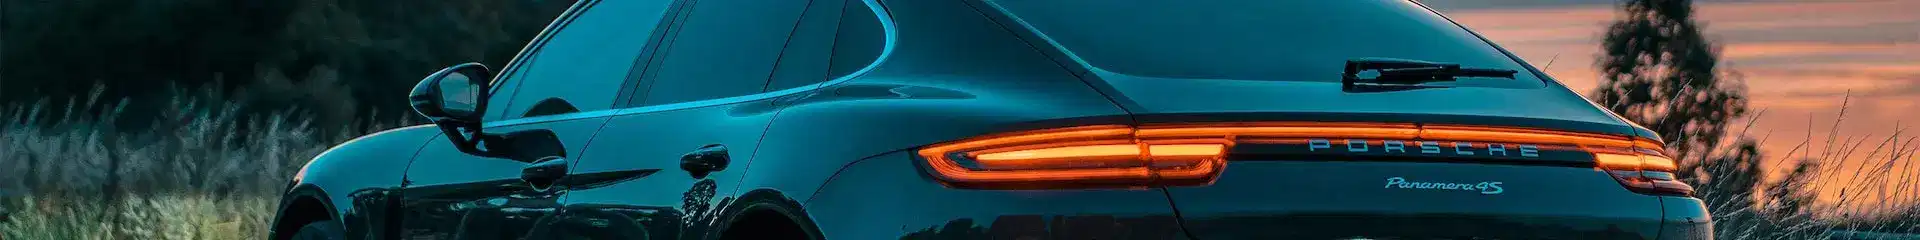 Porsche Car Banner Sunset